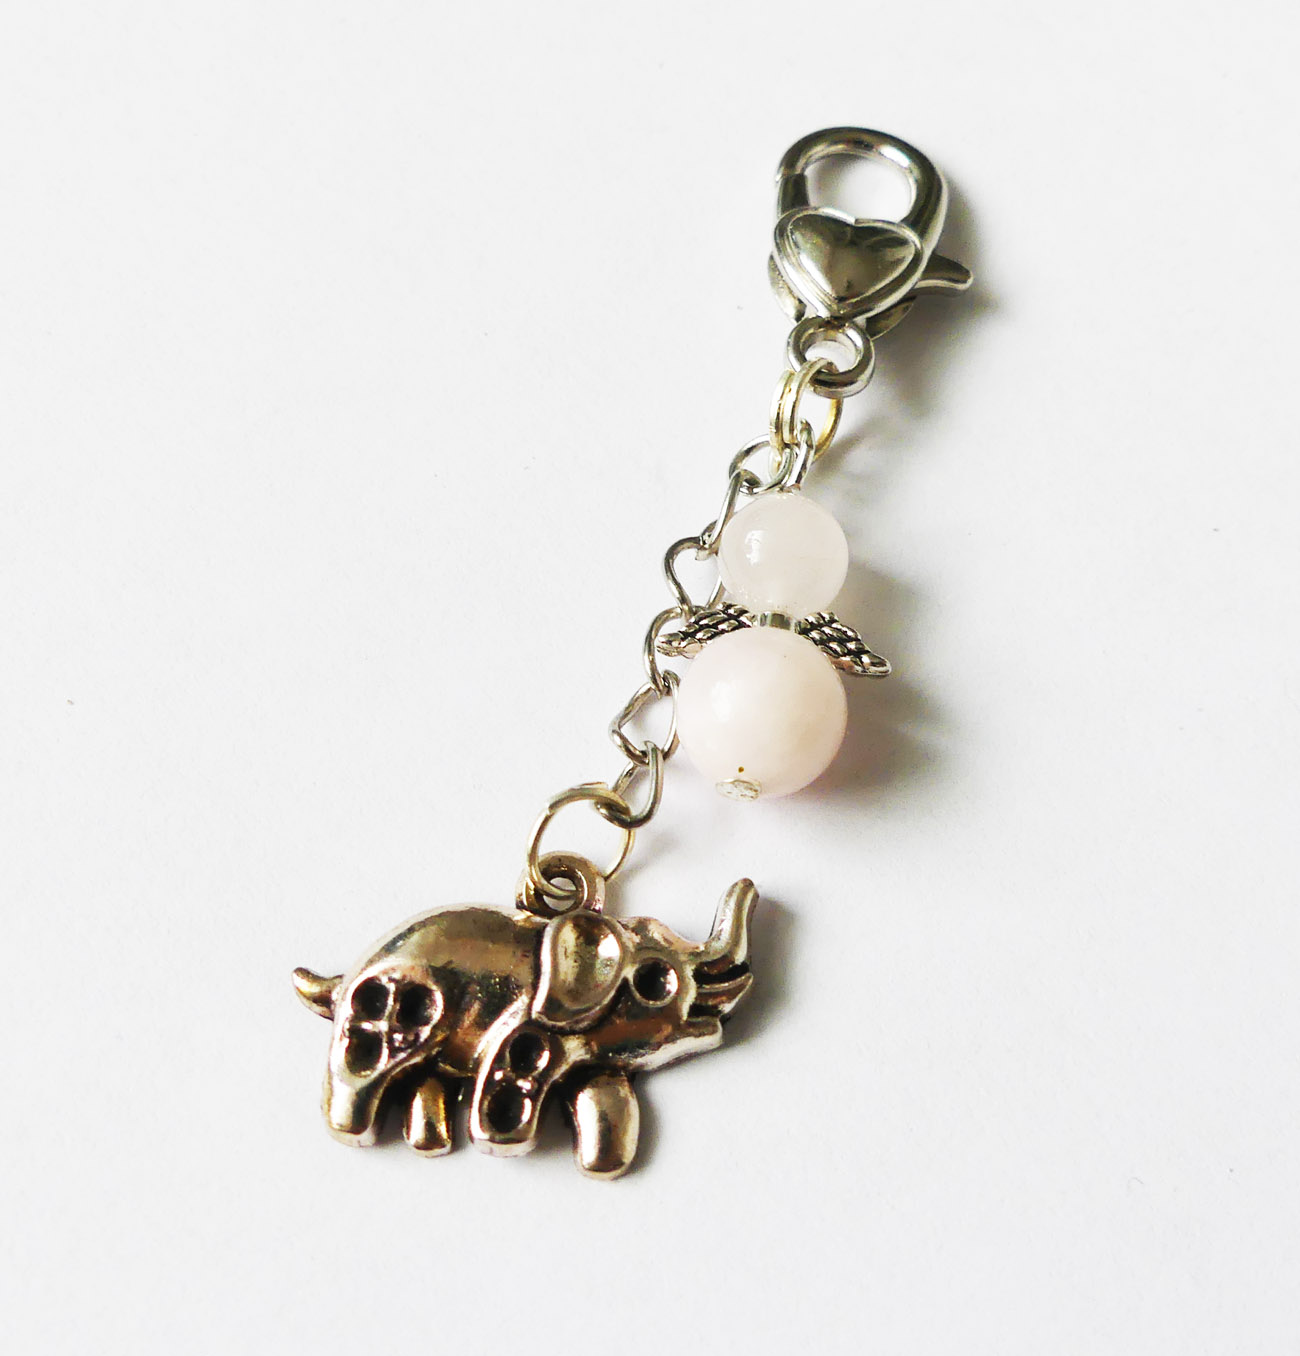 Handmade kľúčenka/prívesok so sloníkom a anjelom z ruženínu a jadeitu